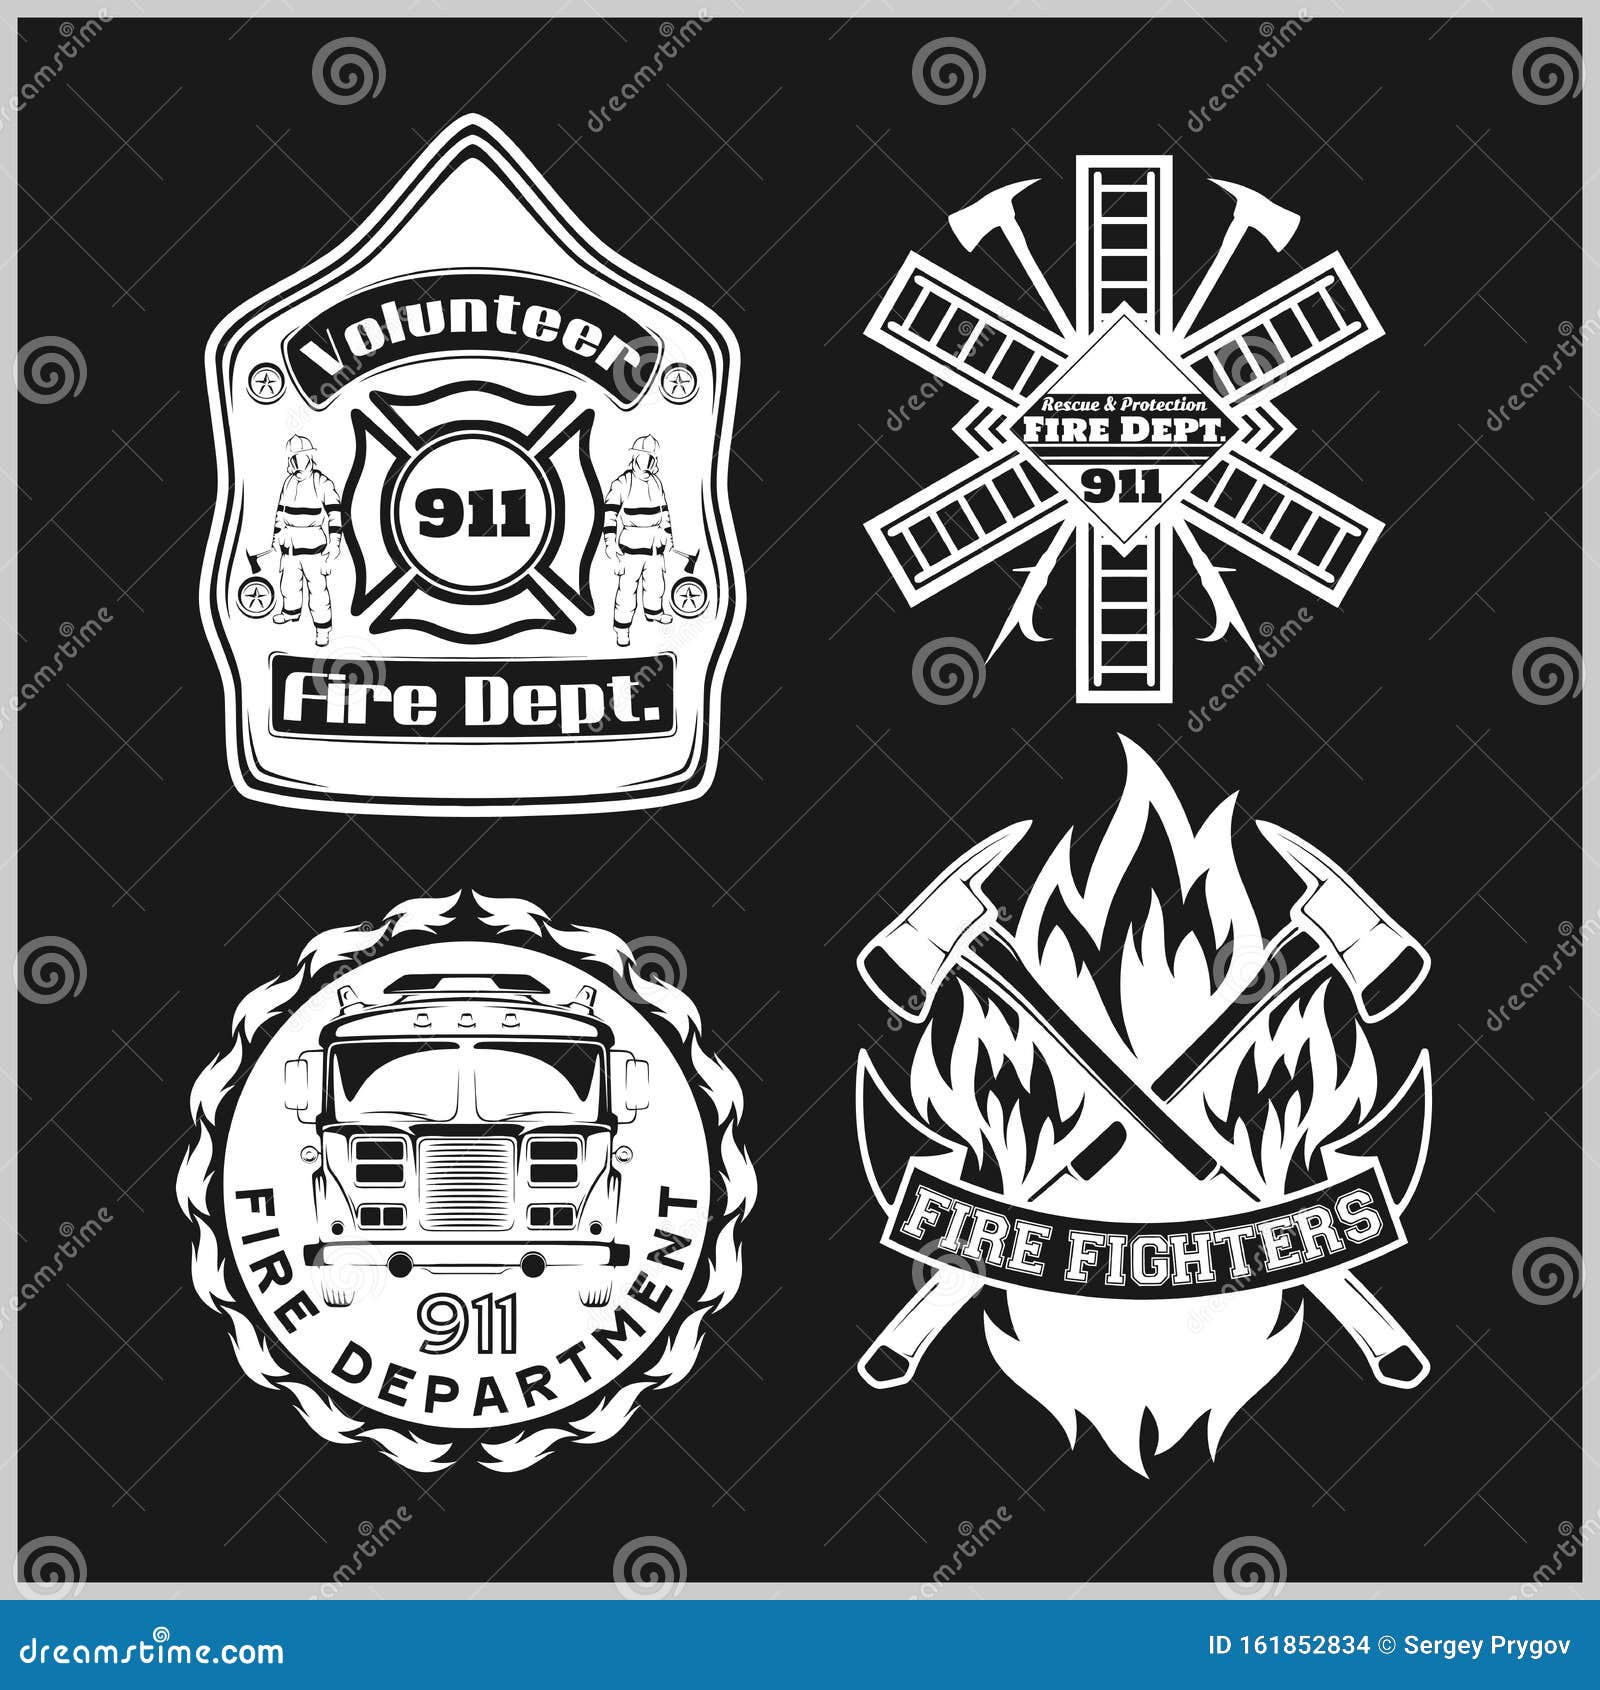 Firemans Vector Set - T-shirt Graphics, Fire Department, Sworn To ...